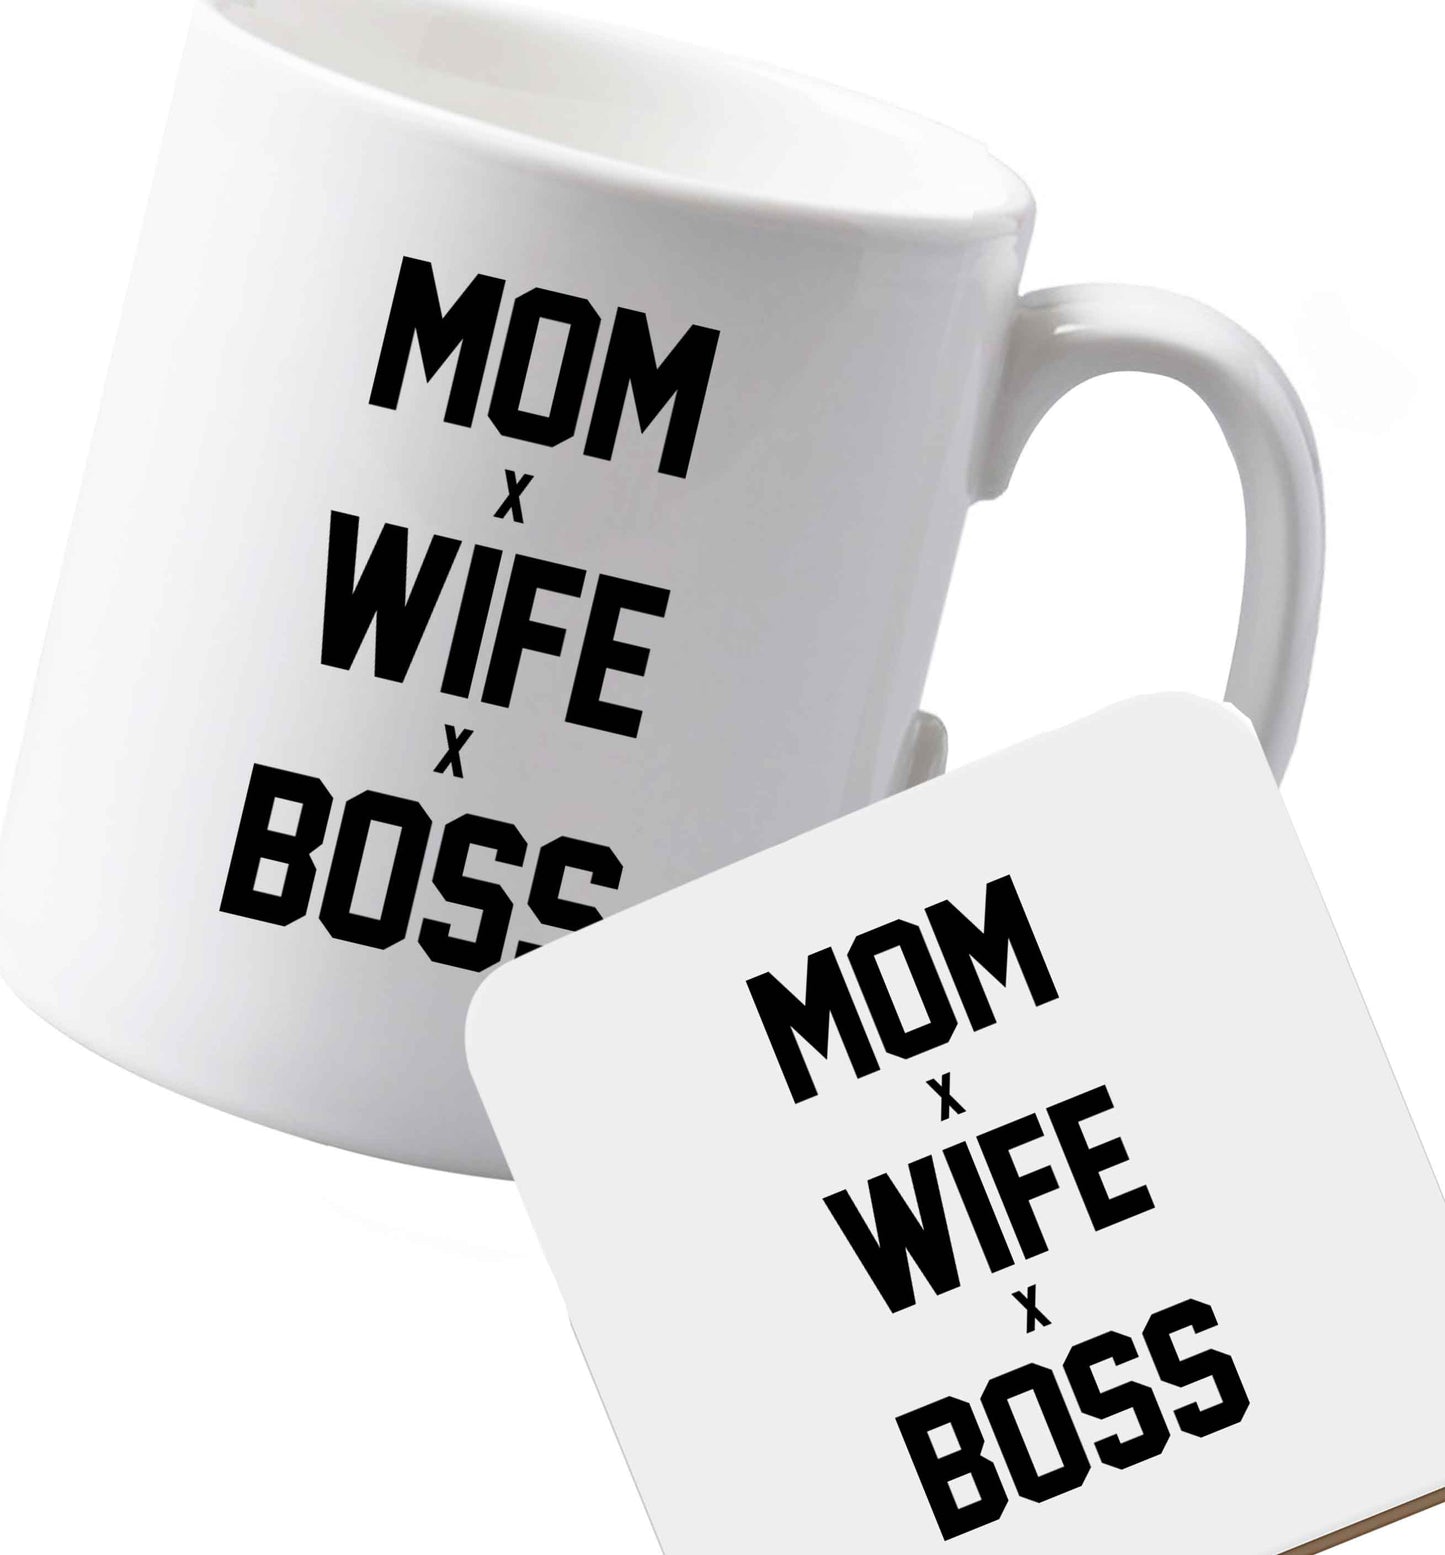 10 oz Ceramic mug and coaster Mum wife boss both sides